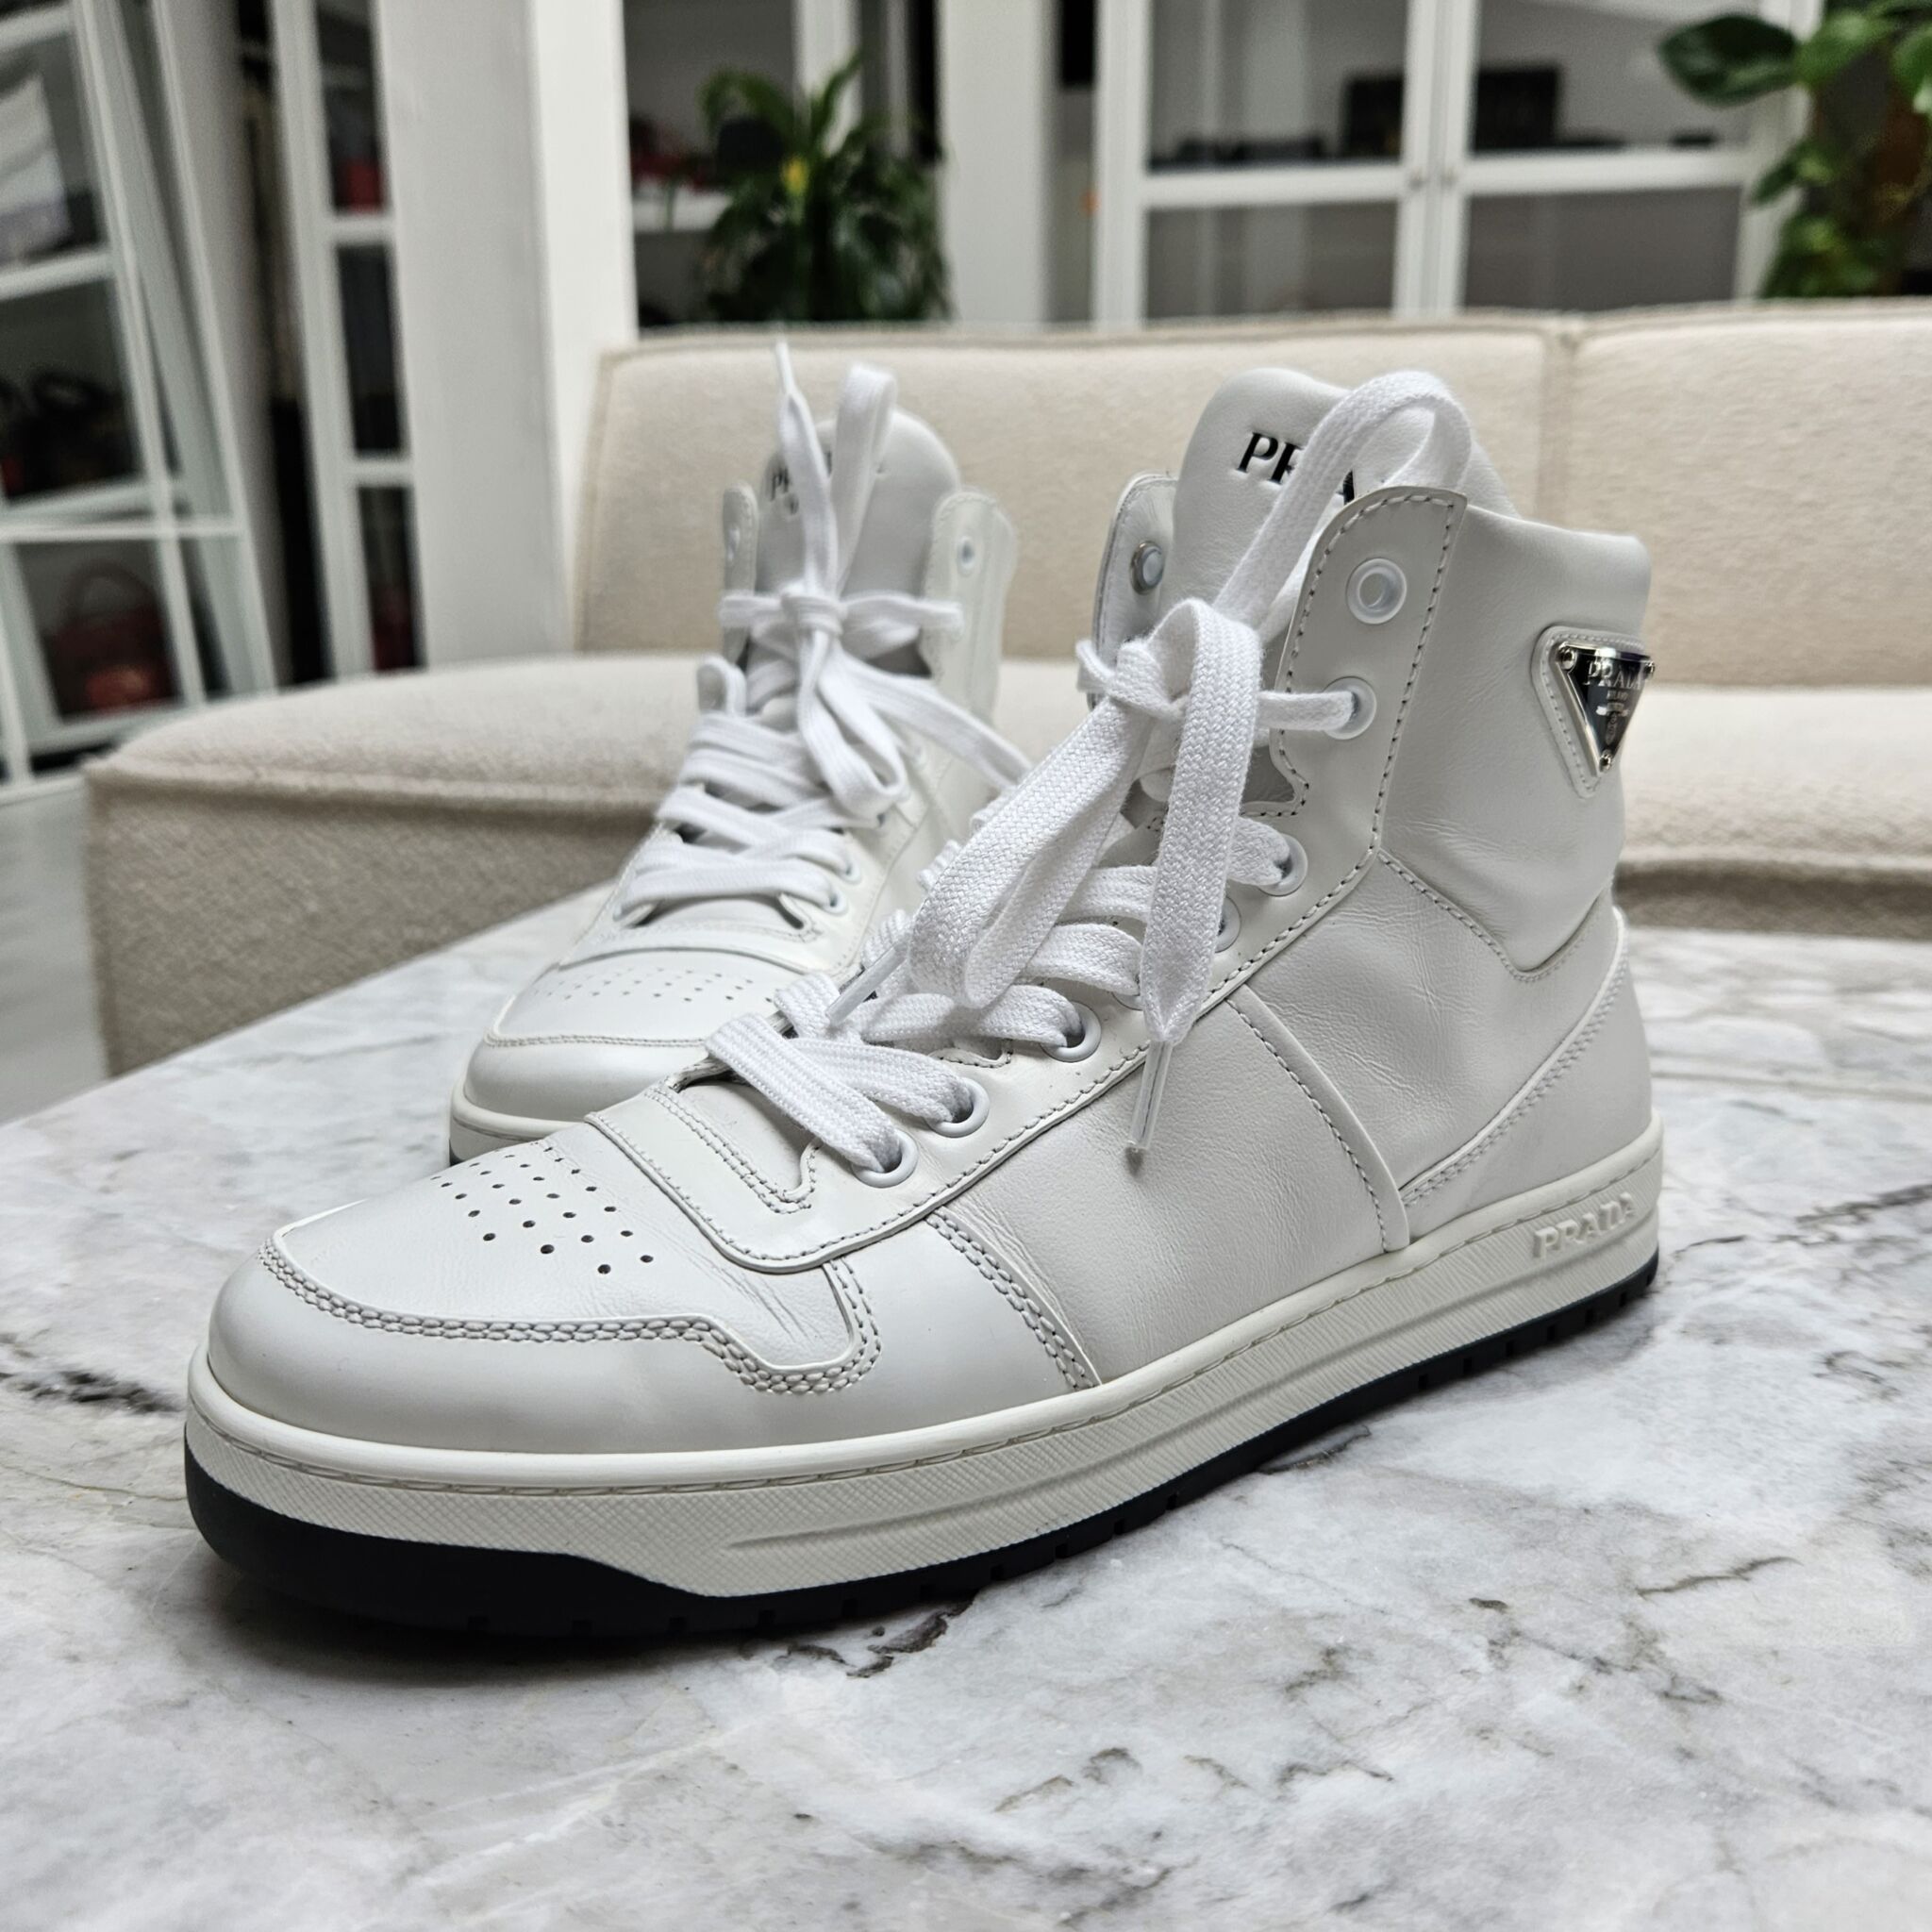 Prada High Top Sneakers, Hvid/Sølv, 38.5 - Laulay Luxury